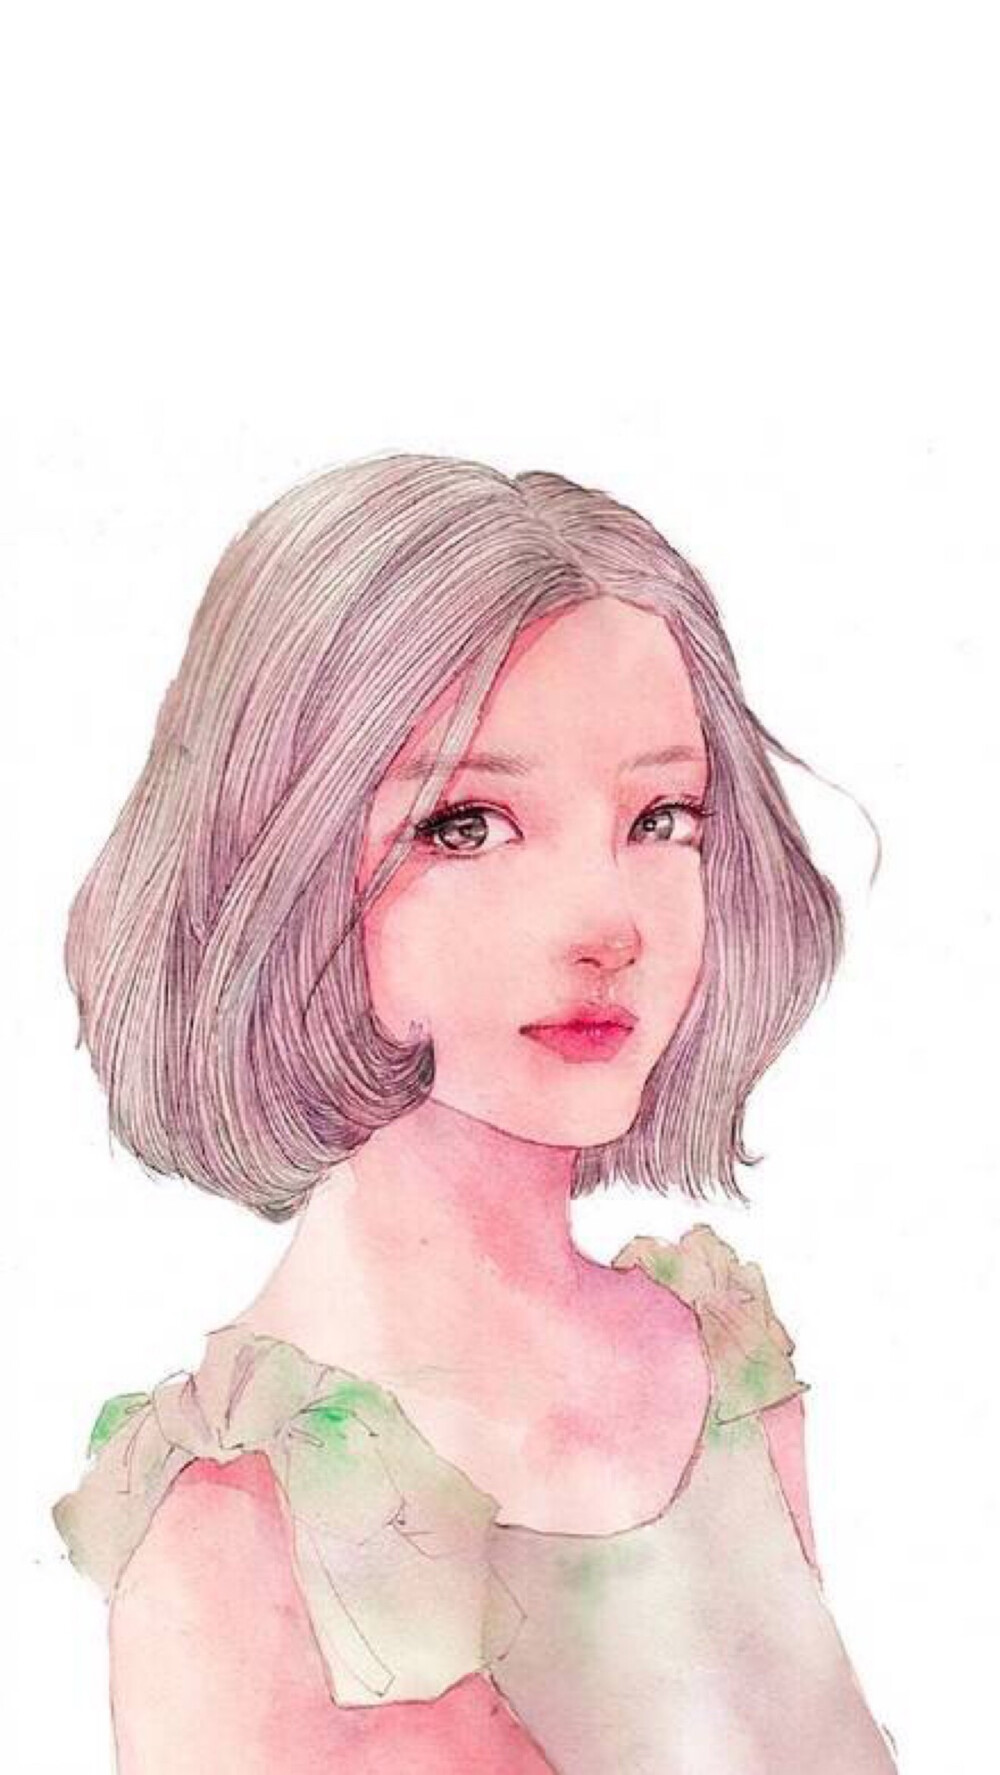 女孩 女生 人物 手绘 插画 唯美 个性 白色 短发 壁纸 锁屏 背景 头像